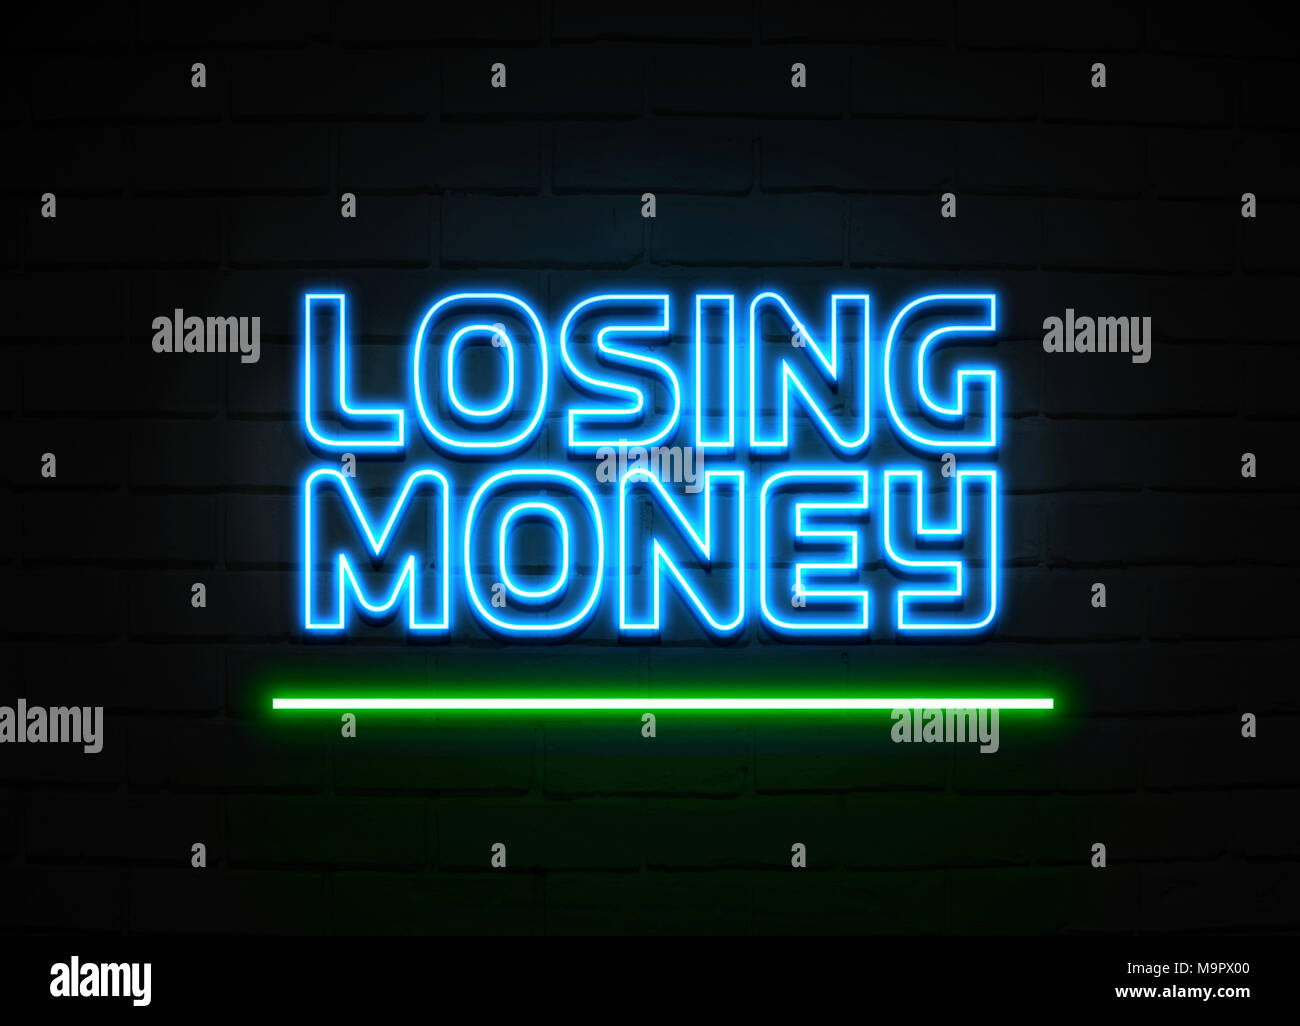 Schlusses Geld Leuchtreklame - glühende Leuchtreklame auf brickwall Wand - 3D-Royalty Free Stock Illustration dargestellt. Stockfoto